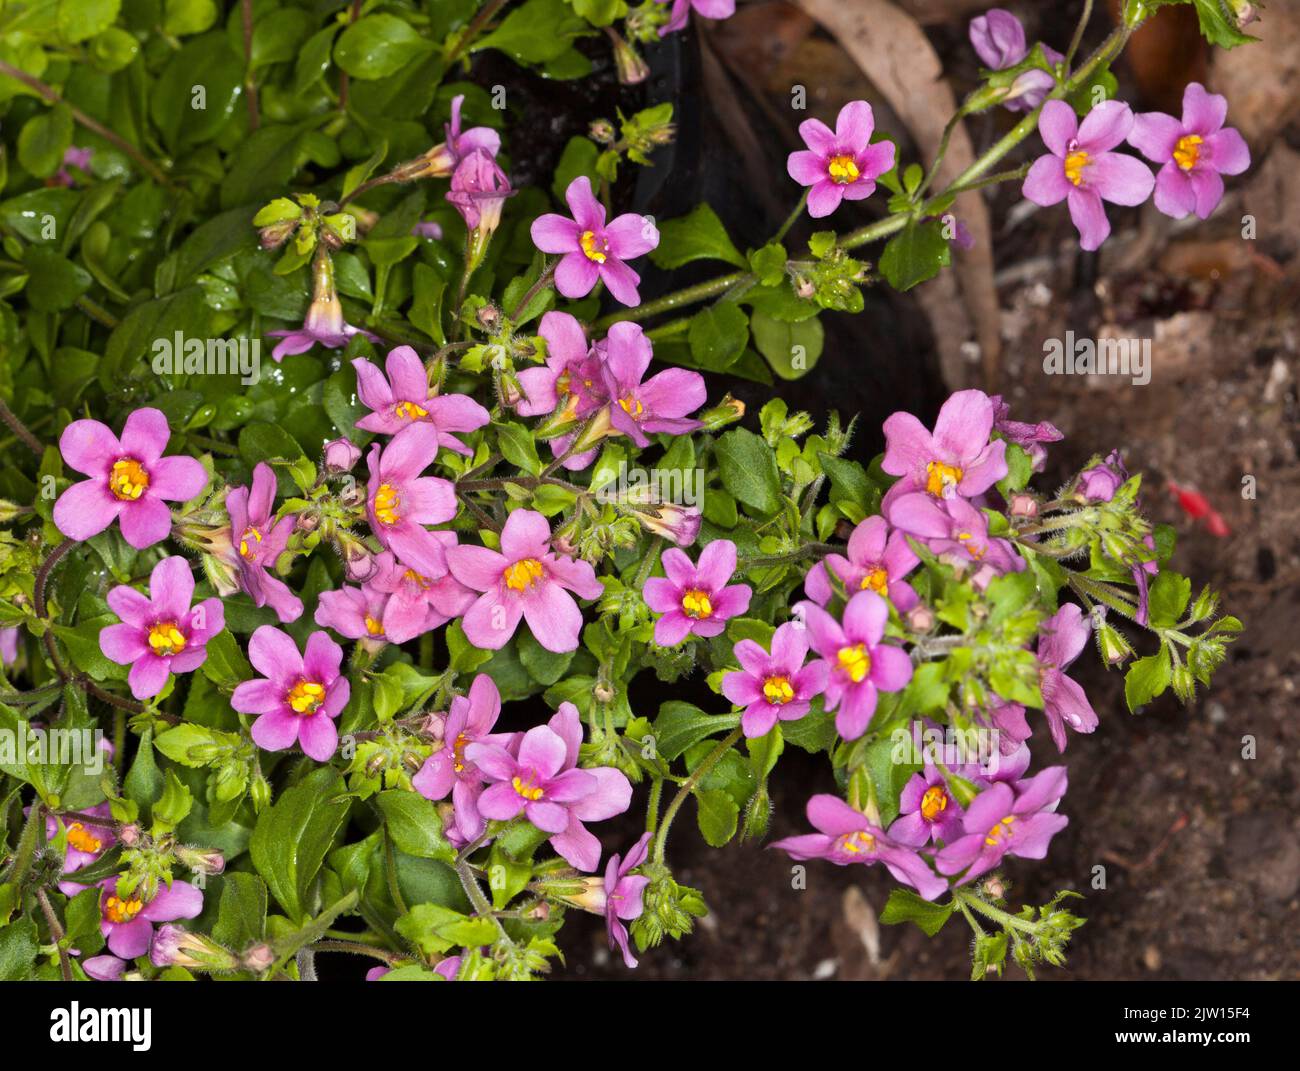 Groupe de petites fleurs roses vives et de feuilles vert vif de BACOPA topia syn. Sutera cordata, plante vivace de couverture végétale / rockery dans un récipient Banque D'Images